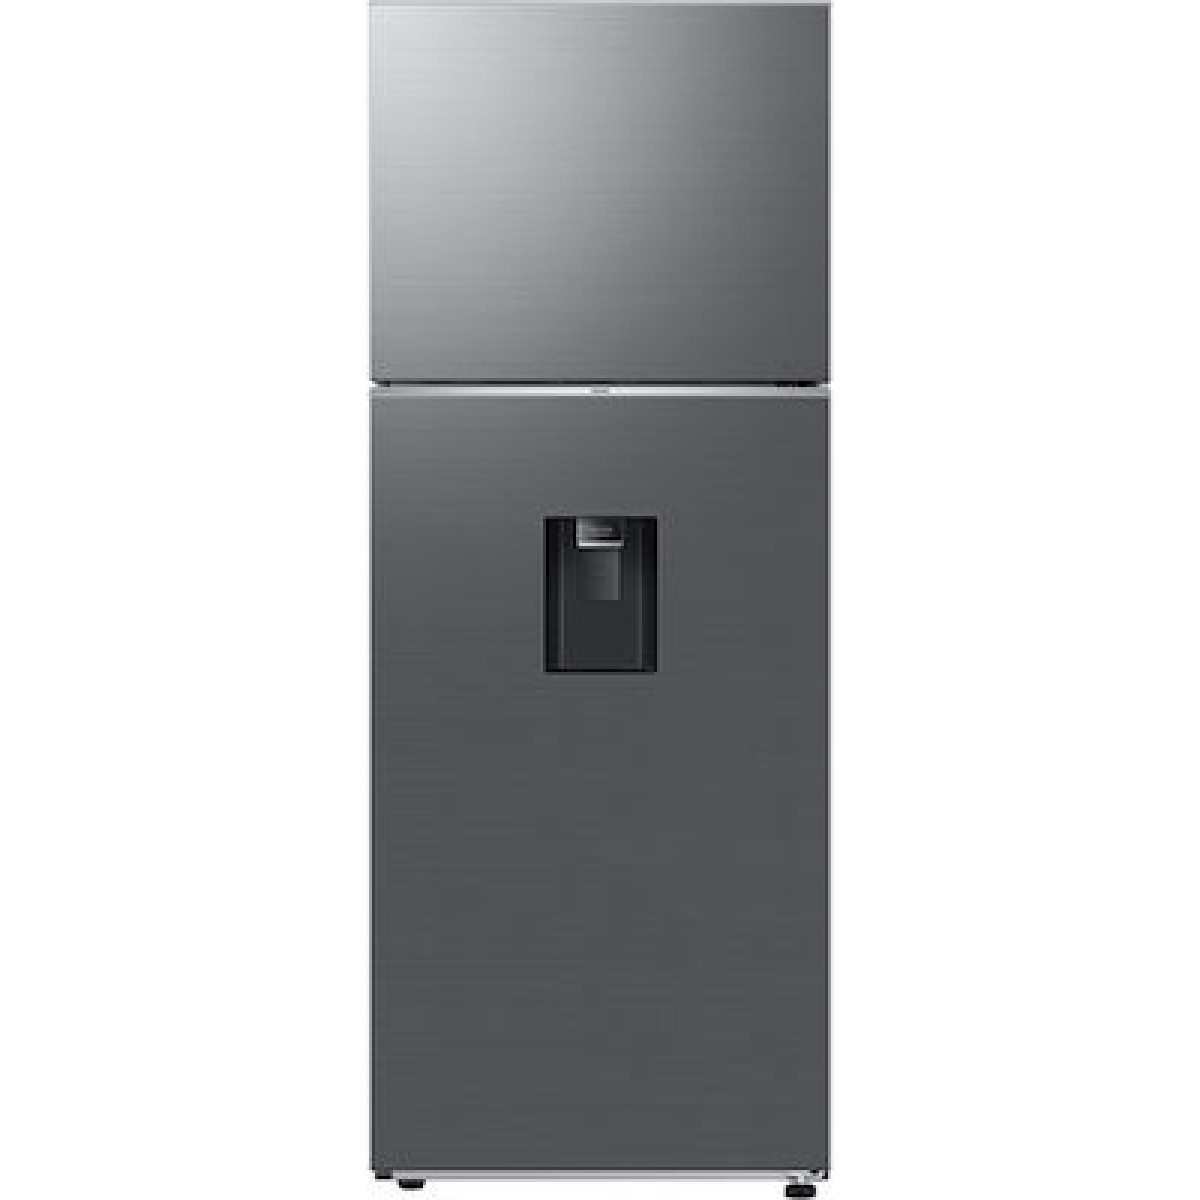  Ψυγείο Δίπορτο Samsung RT47CG6736S9ES NoFrost Inox Ψυγεία δίπορτα